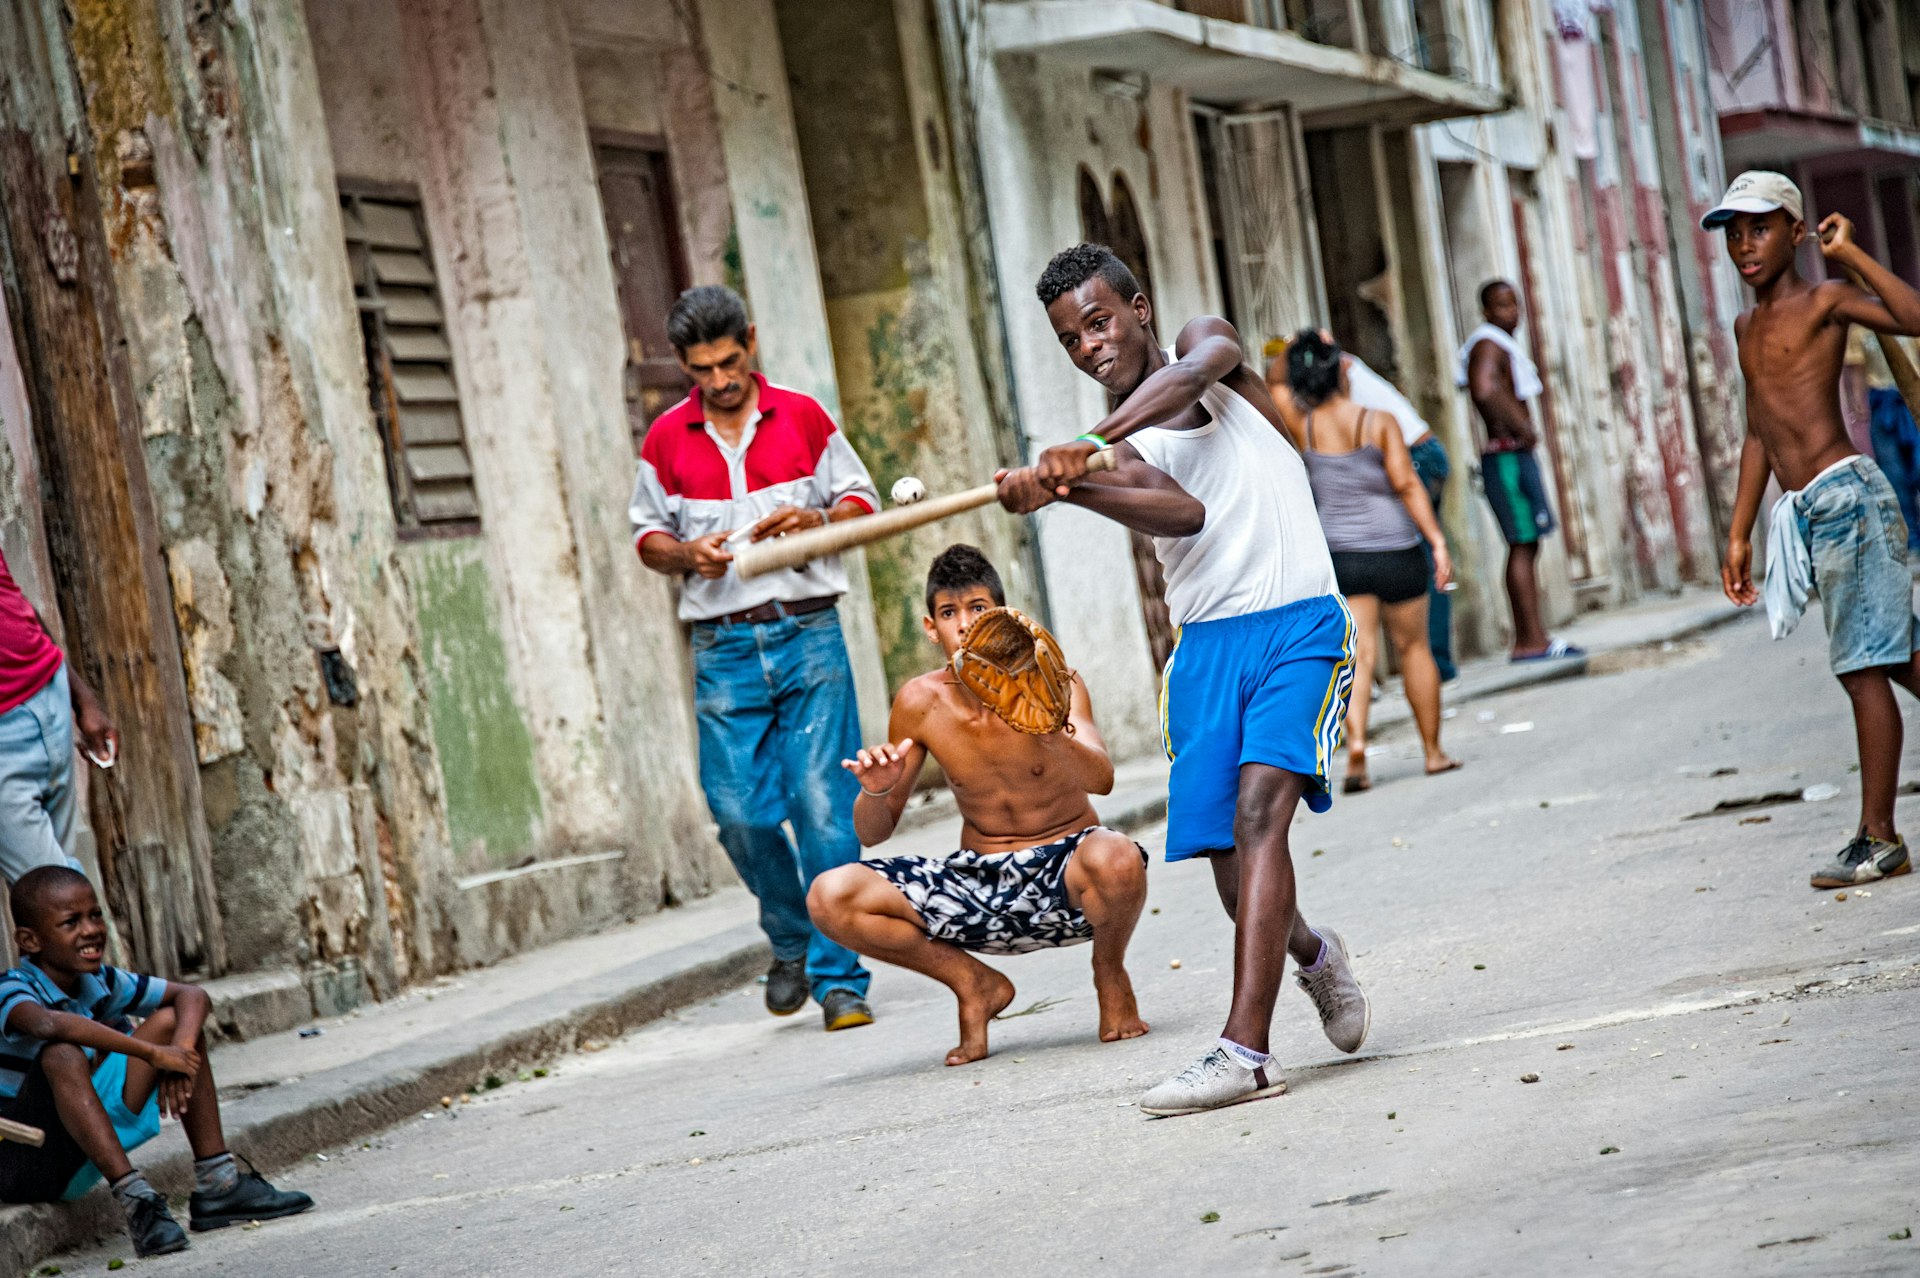 Kids playing baseball on street in Havana, Cuba.